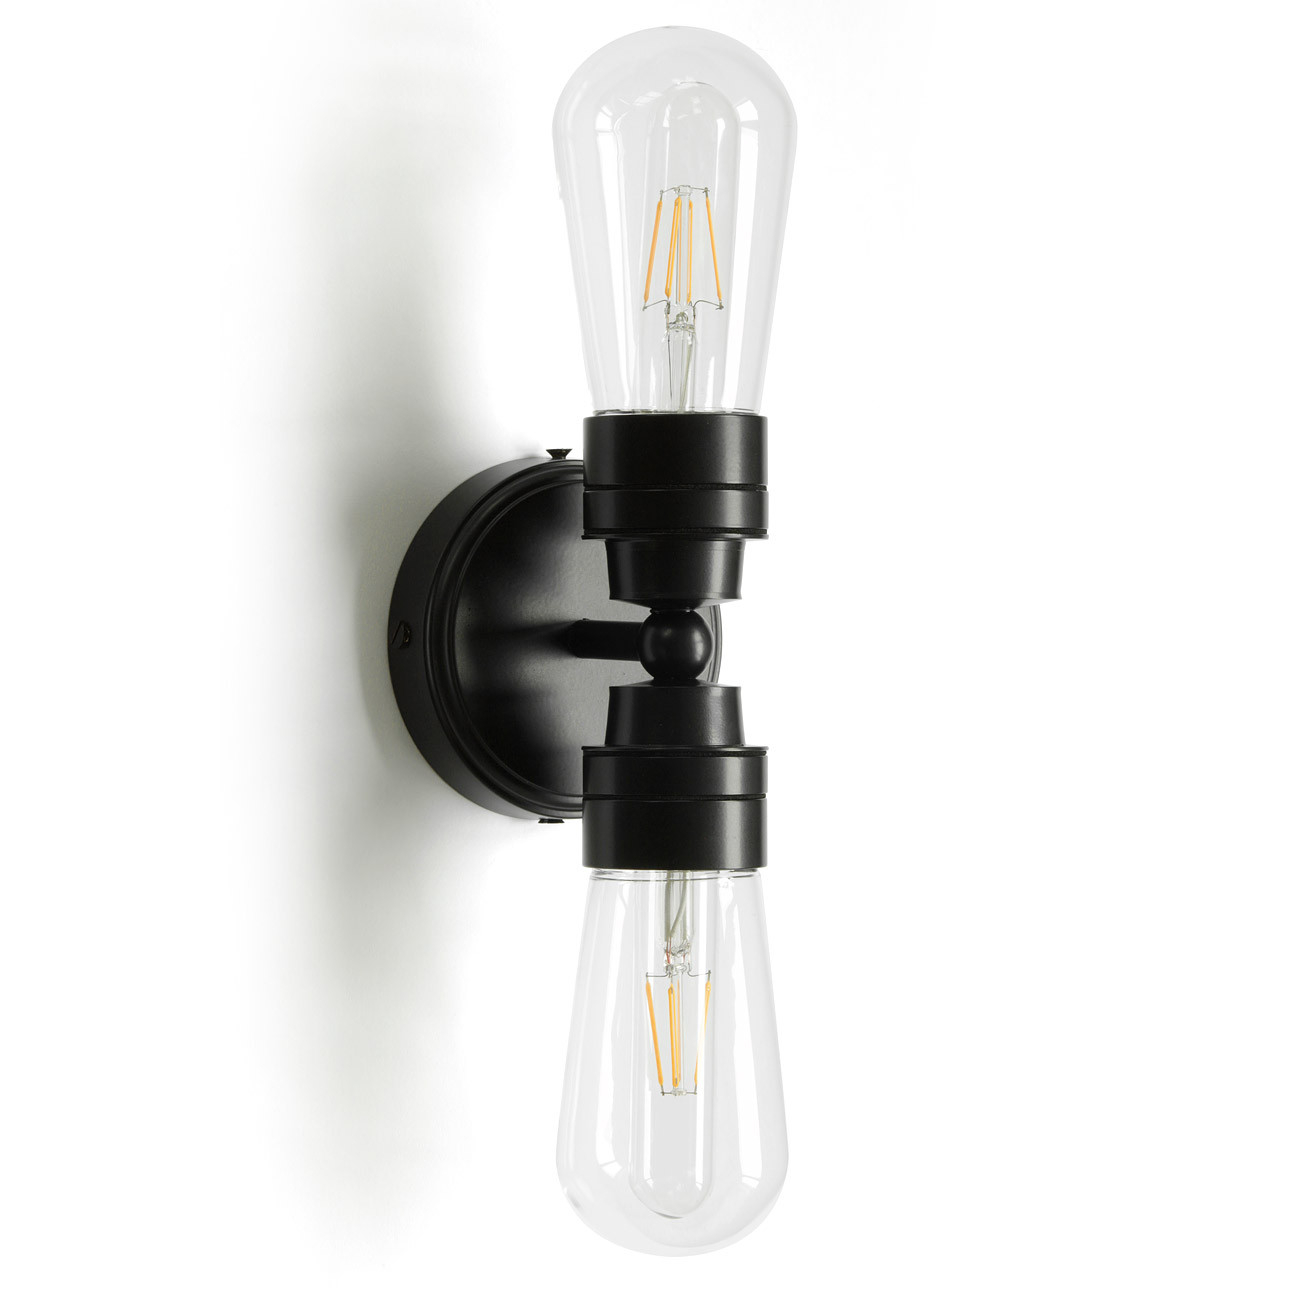 Doppel-Badezimmer-Lampe Mit Ip65-Glaskolben, Wand Oder Decke inside Lampe Badezimmer Wand